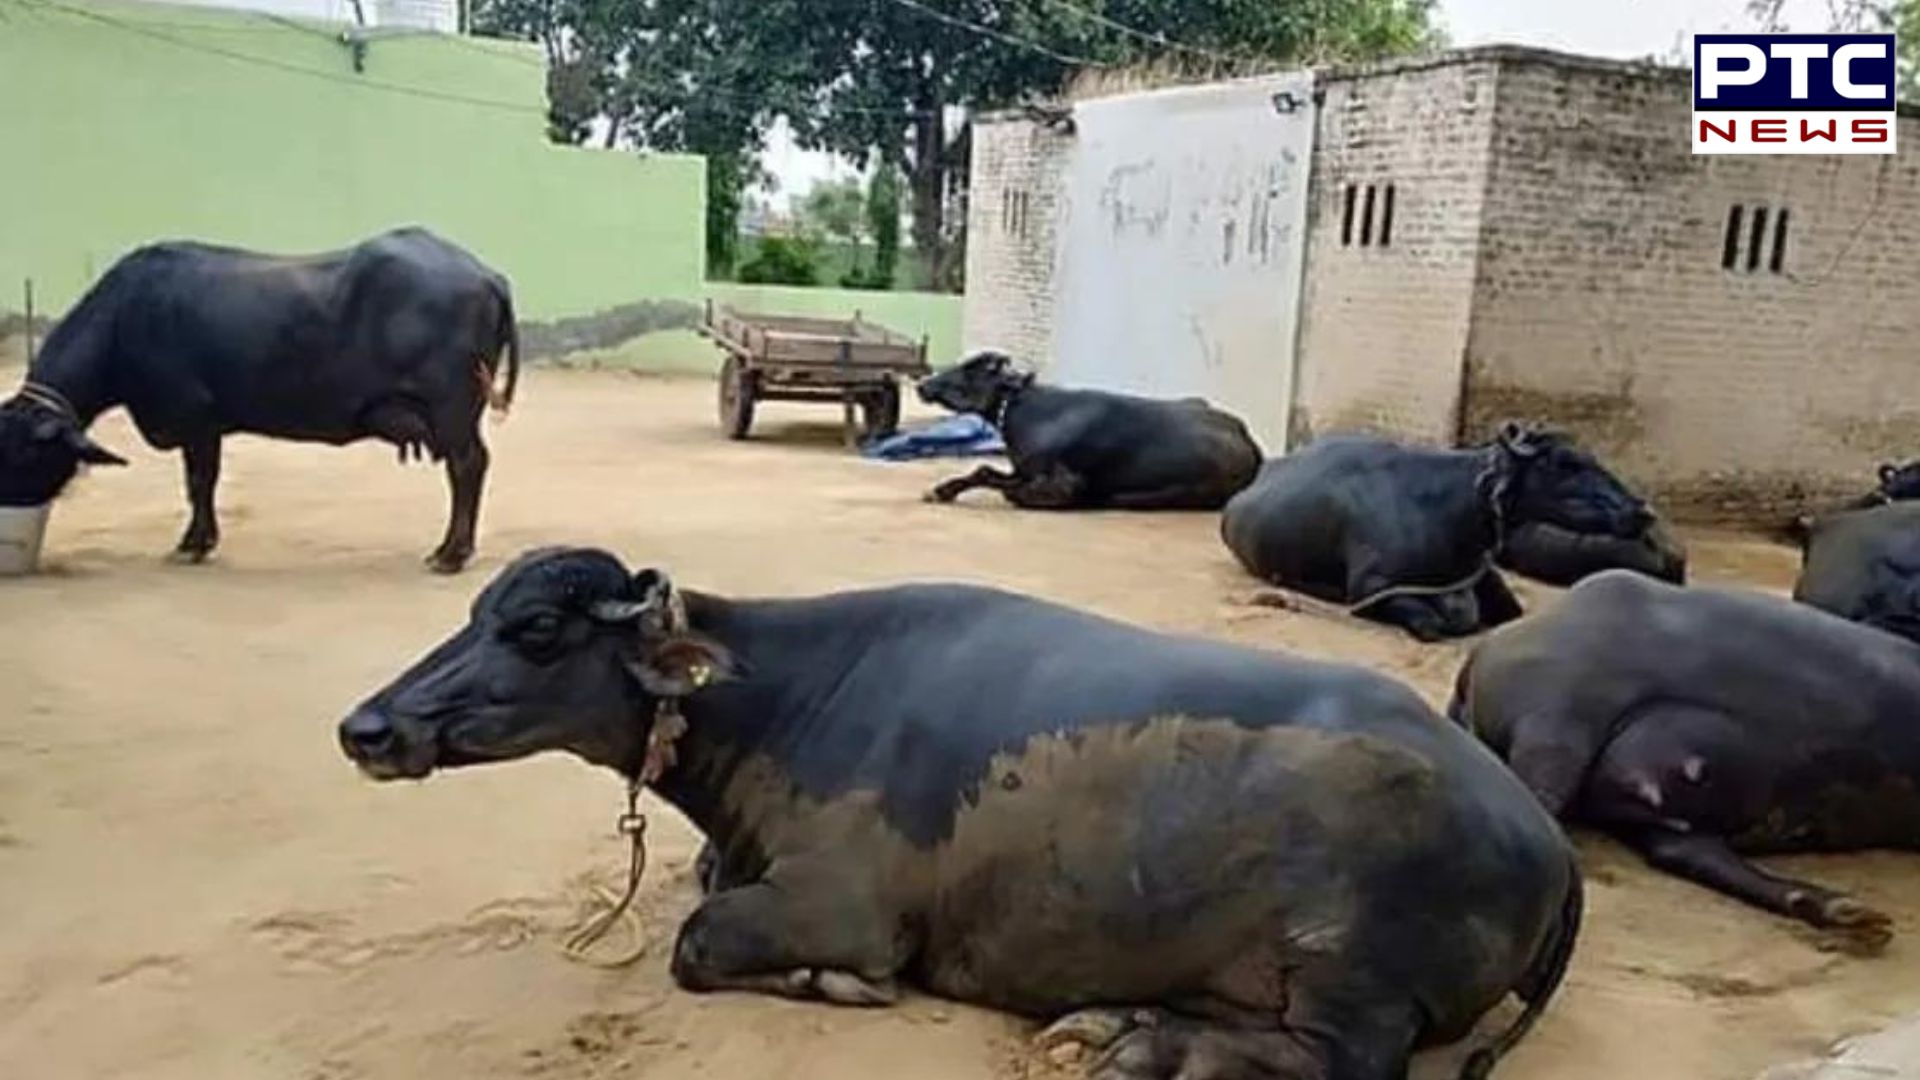 Dairy Cattle Died: ਬਰਨਾਲਾ ’ਚ 30 ਦੇ ਕਰੀਬ ਦੁਧਾਰੂ ਪਸ਼ੂਆਂ ਦੀ ਹੋਈ ਮੌਤ, ਪੀੜਤ ਲੋਕਾਂ ਨੇ ਕੀਤੀ ਇਹ ਮੰਗ